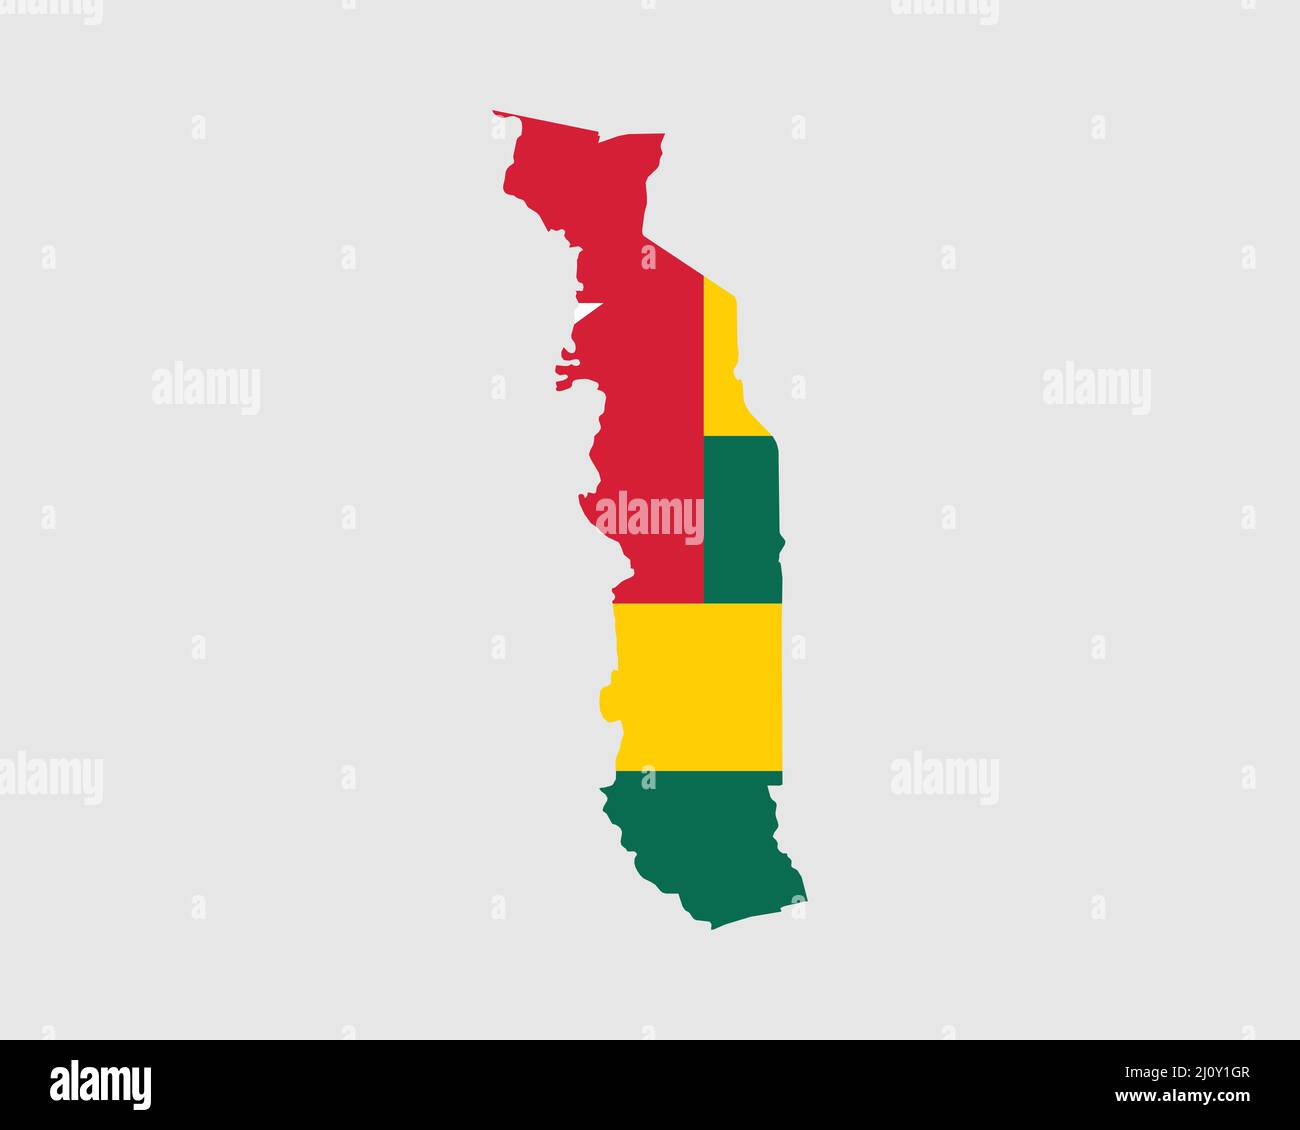 Karte Mit Togo-Flagge. Karte der togolesischen Republik mit dem togolesischen Länderbanner. Vektorgrafik. Stock Vektor